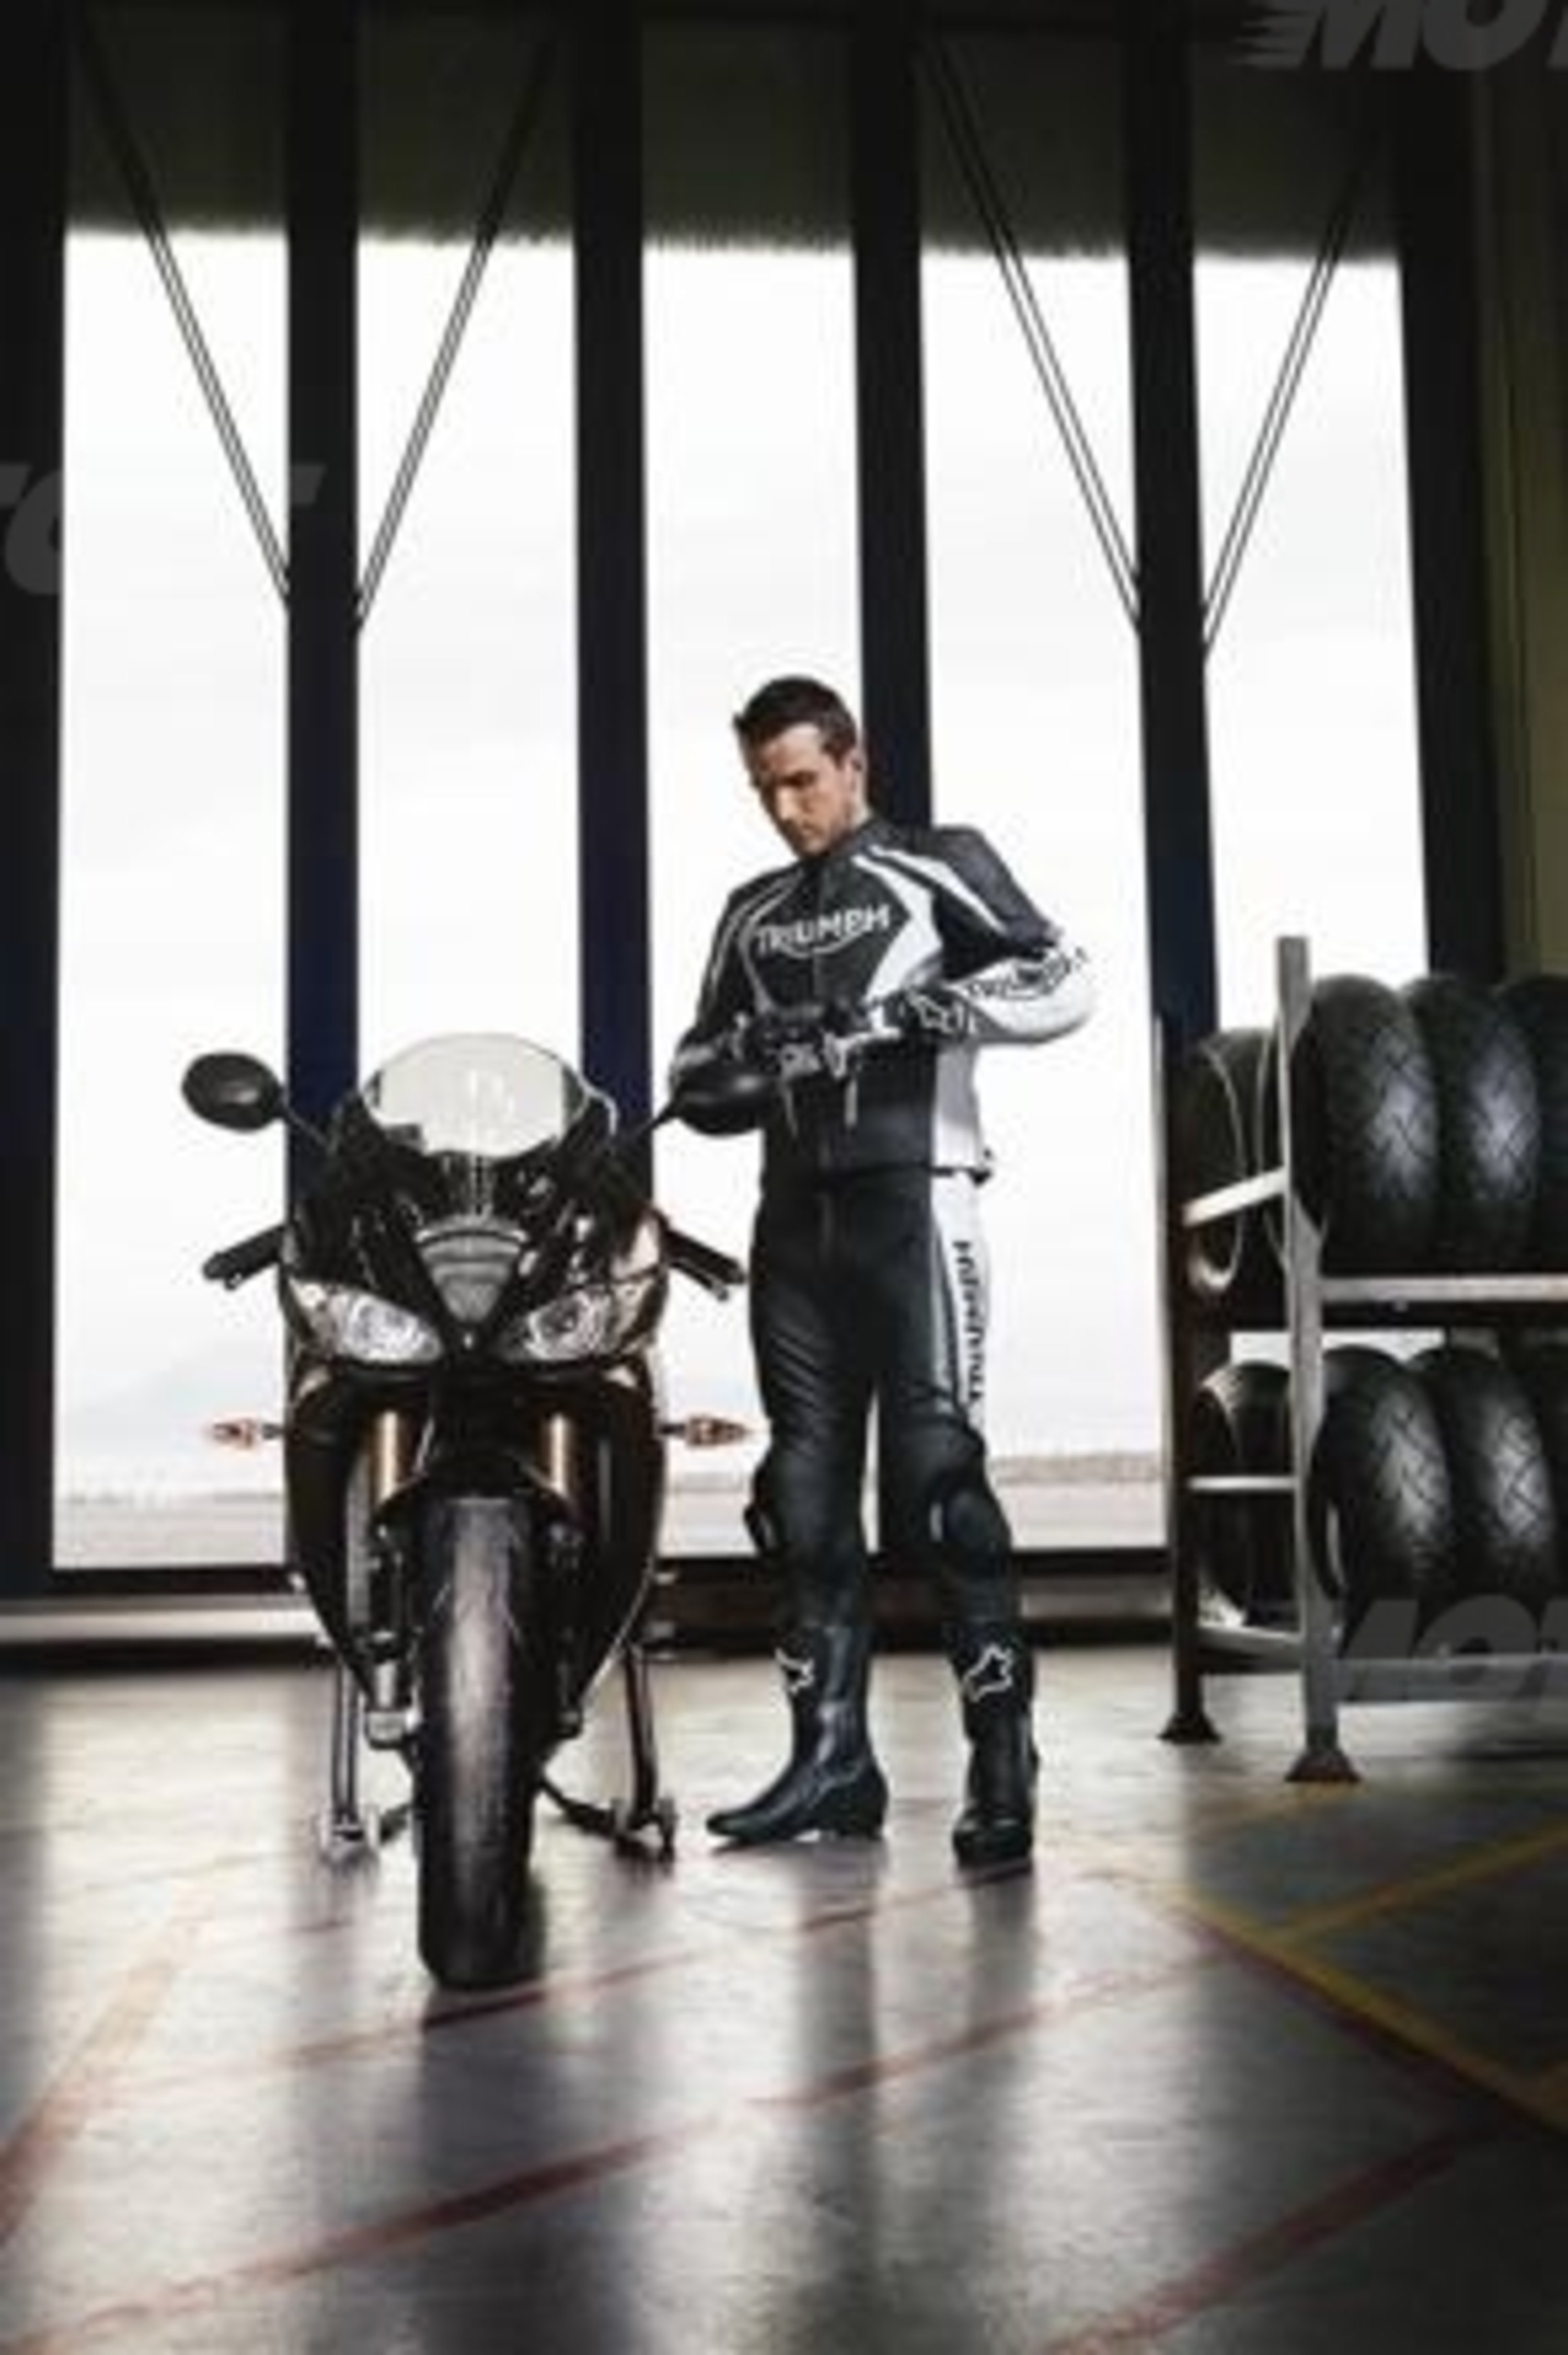 Abbigliamento e accessori Triumph Motorcycles